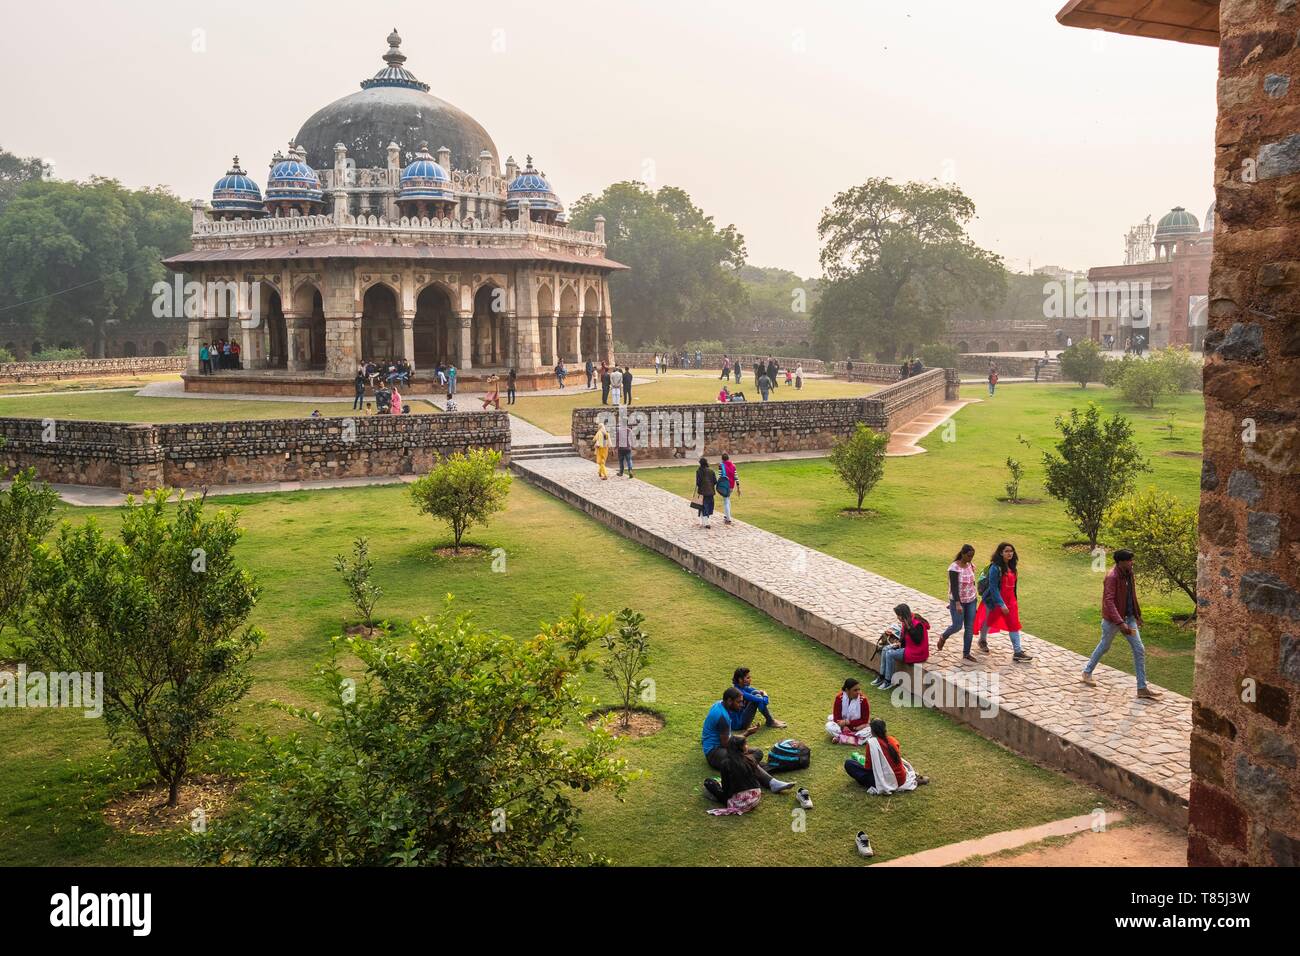 L'Inde, New Delhi, Tombe de Humayun, complexe l'architecture moghole, déclaré site du patrimoine mondial de l'UNESCO, Isa Khan's tomb Banque D'Images